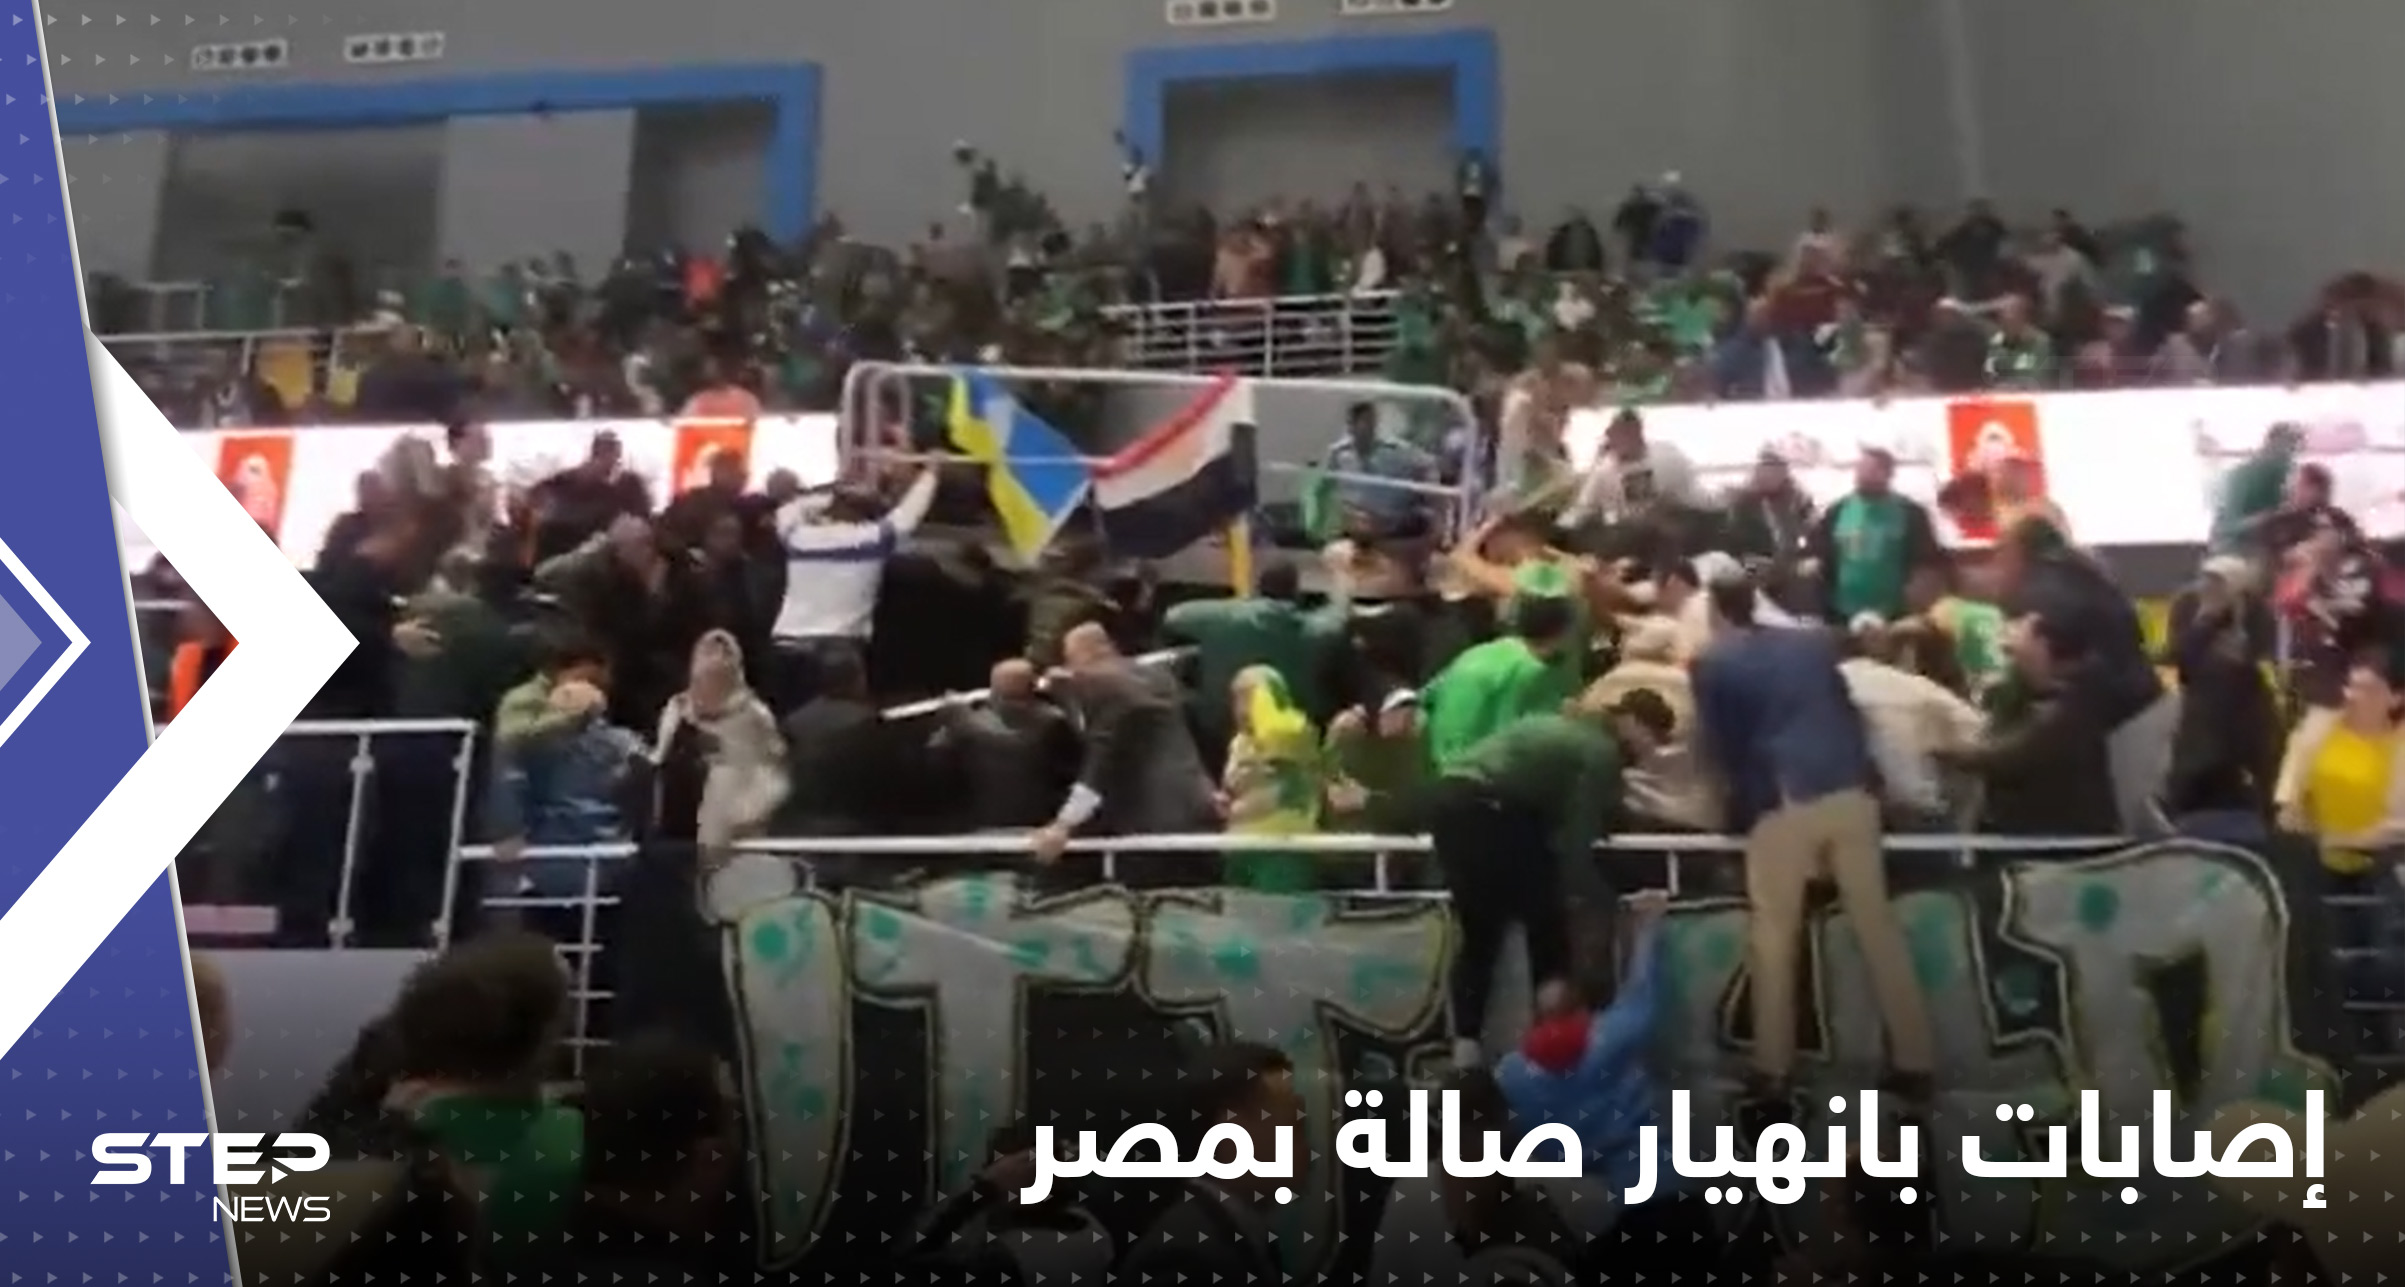 شاهد|| انهيار مدرج صالة رياضية في مصر وإلغاء المباراة وأنباء عن سقوط عدة إصابات